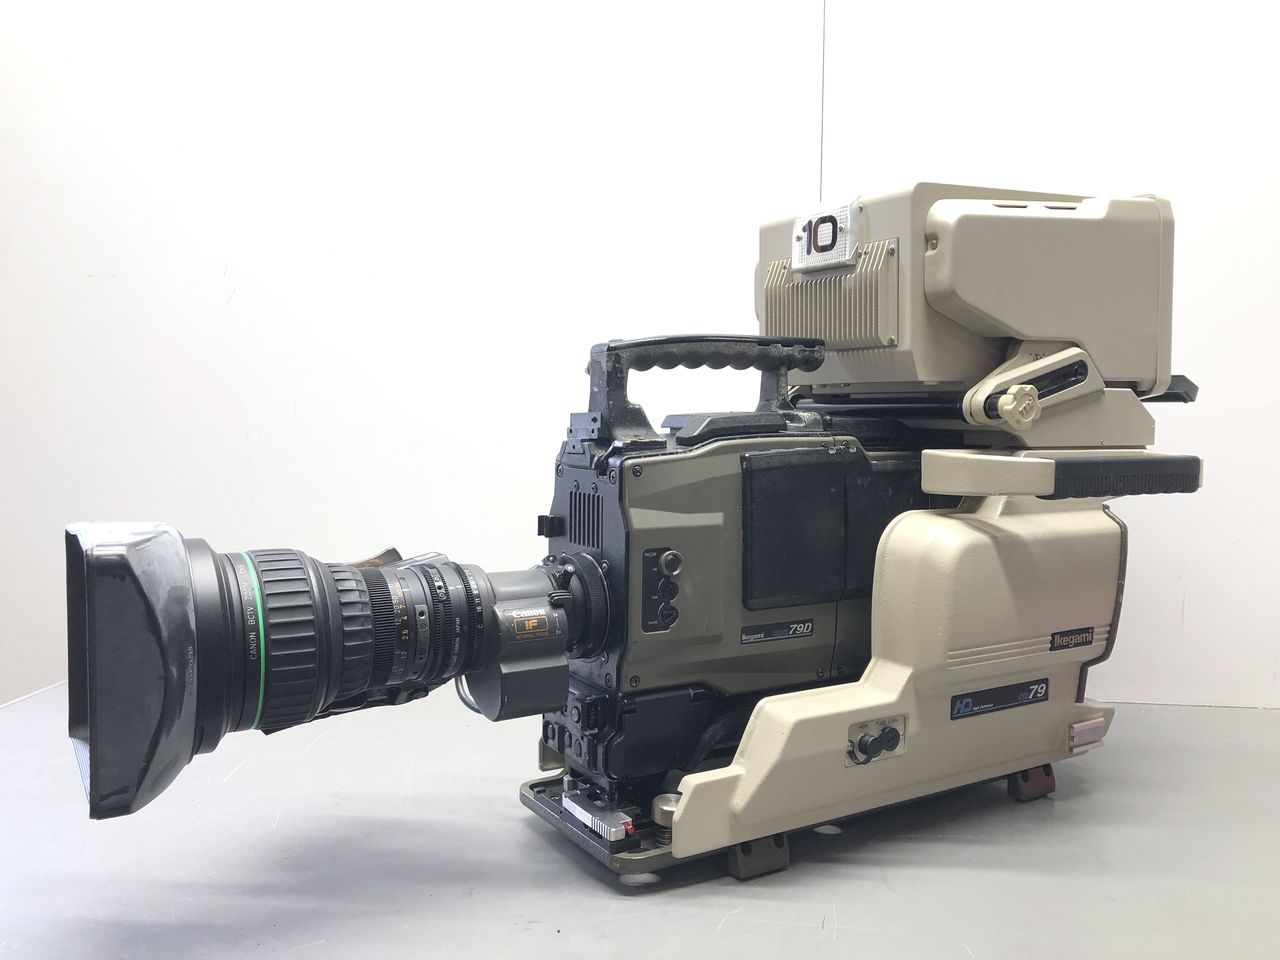 Ikegami HDK-79D ハンディーカメラ SE-79D システムエクスパンダ